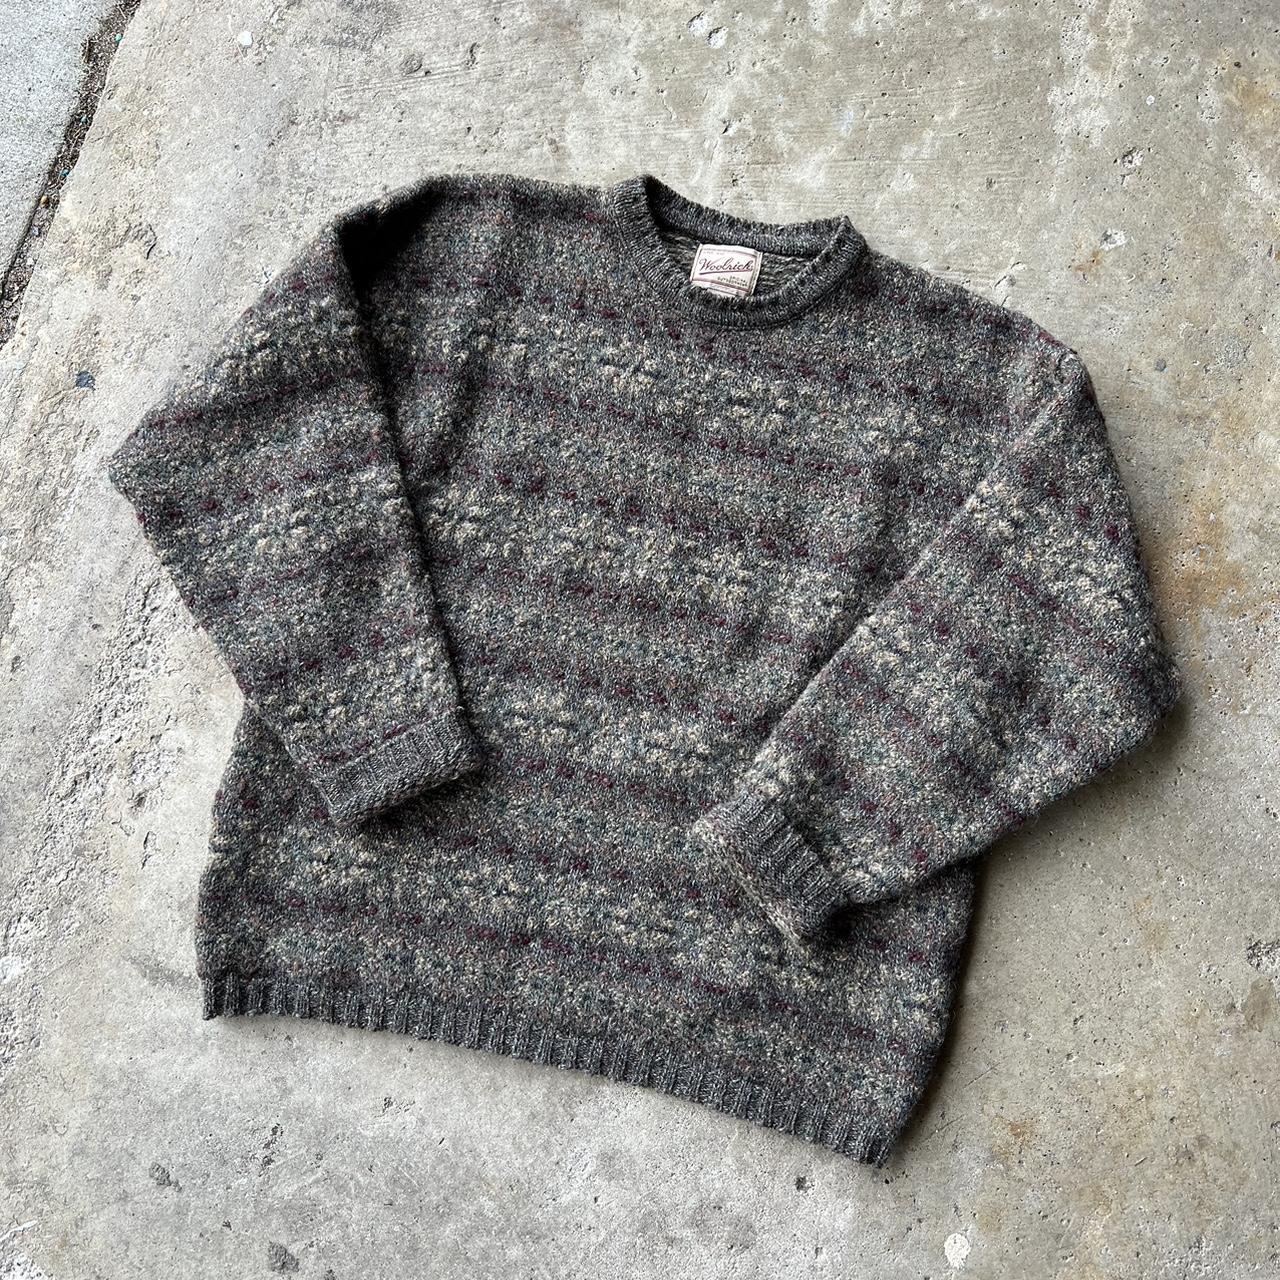 Vintage 90s Woolrich Wool Sweater Size L Good... - Depop